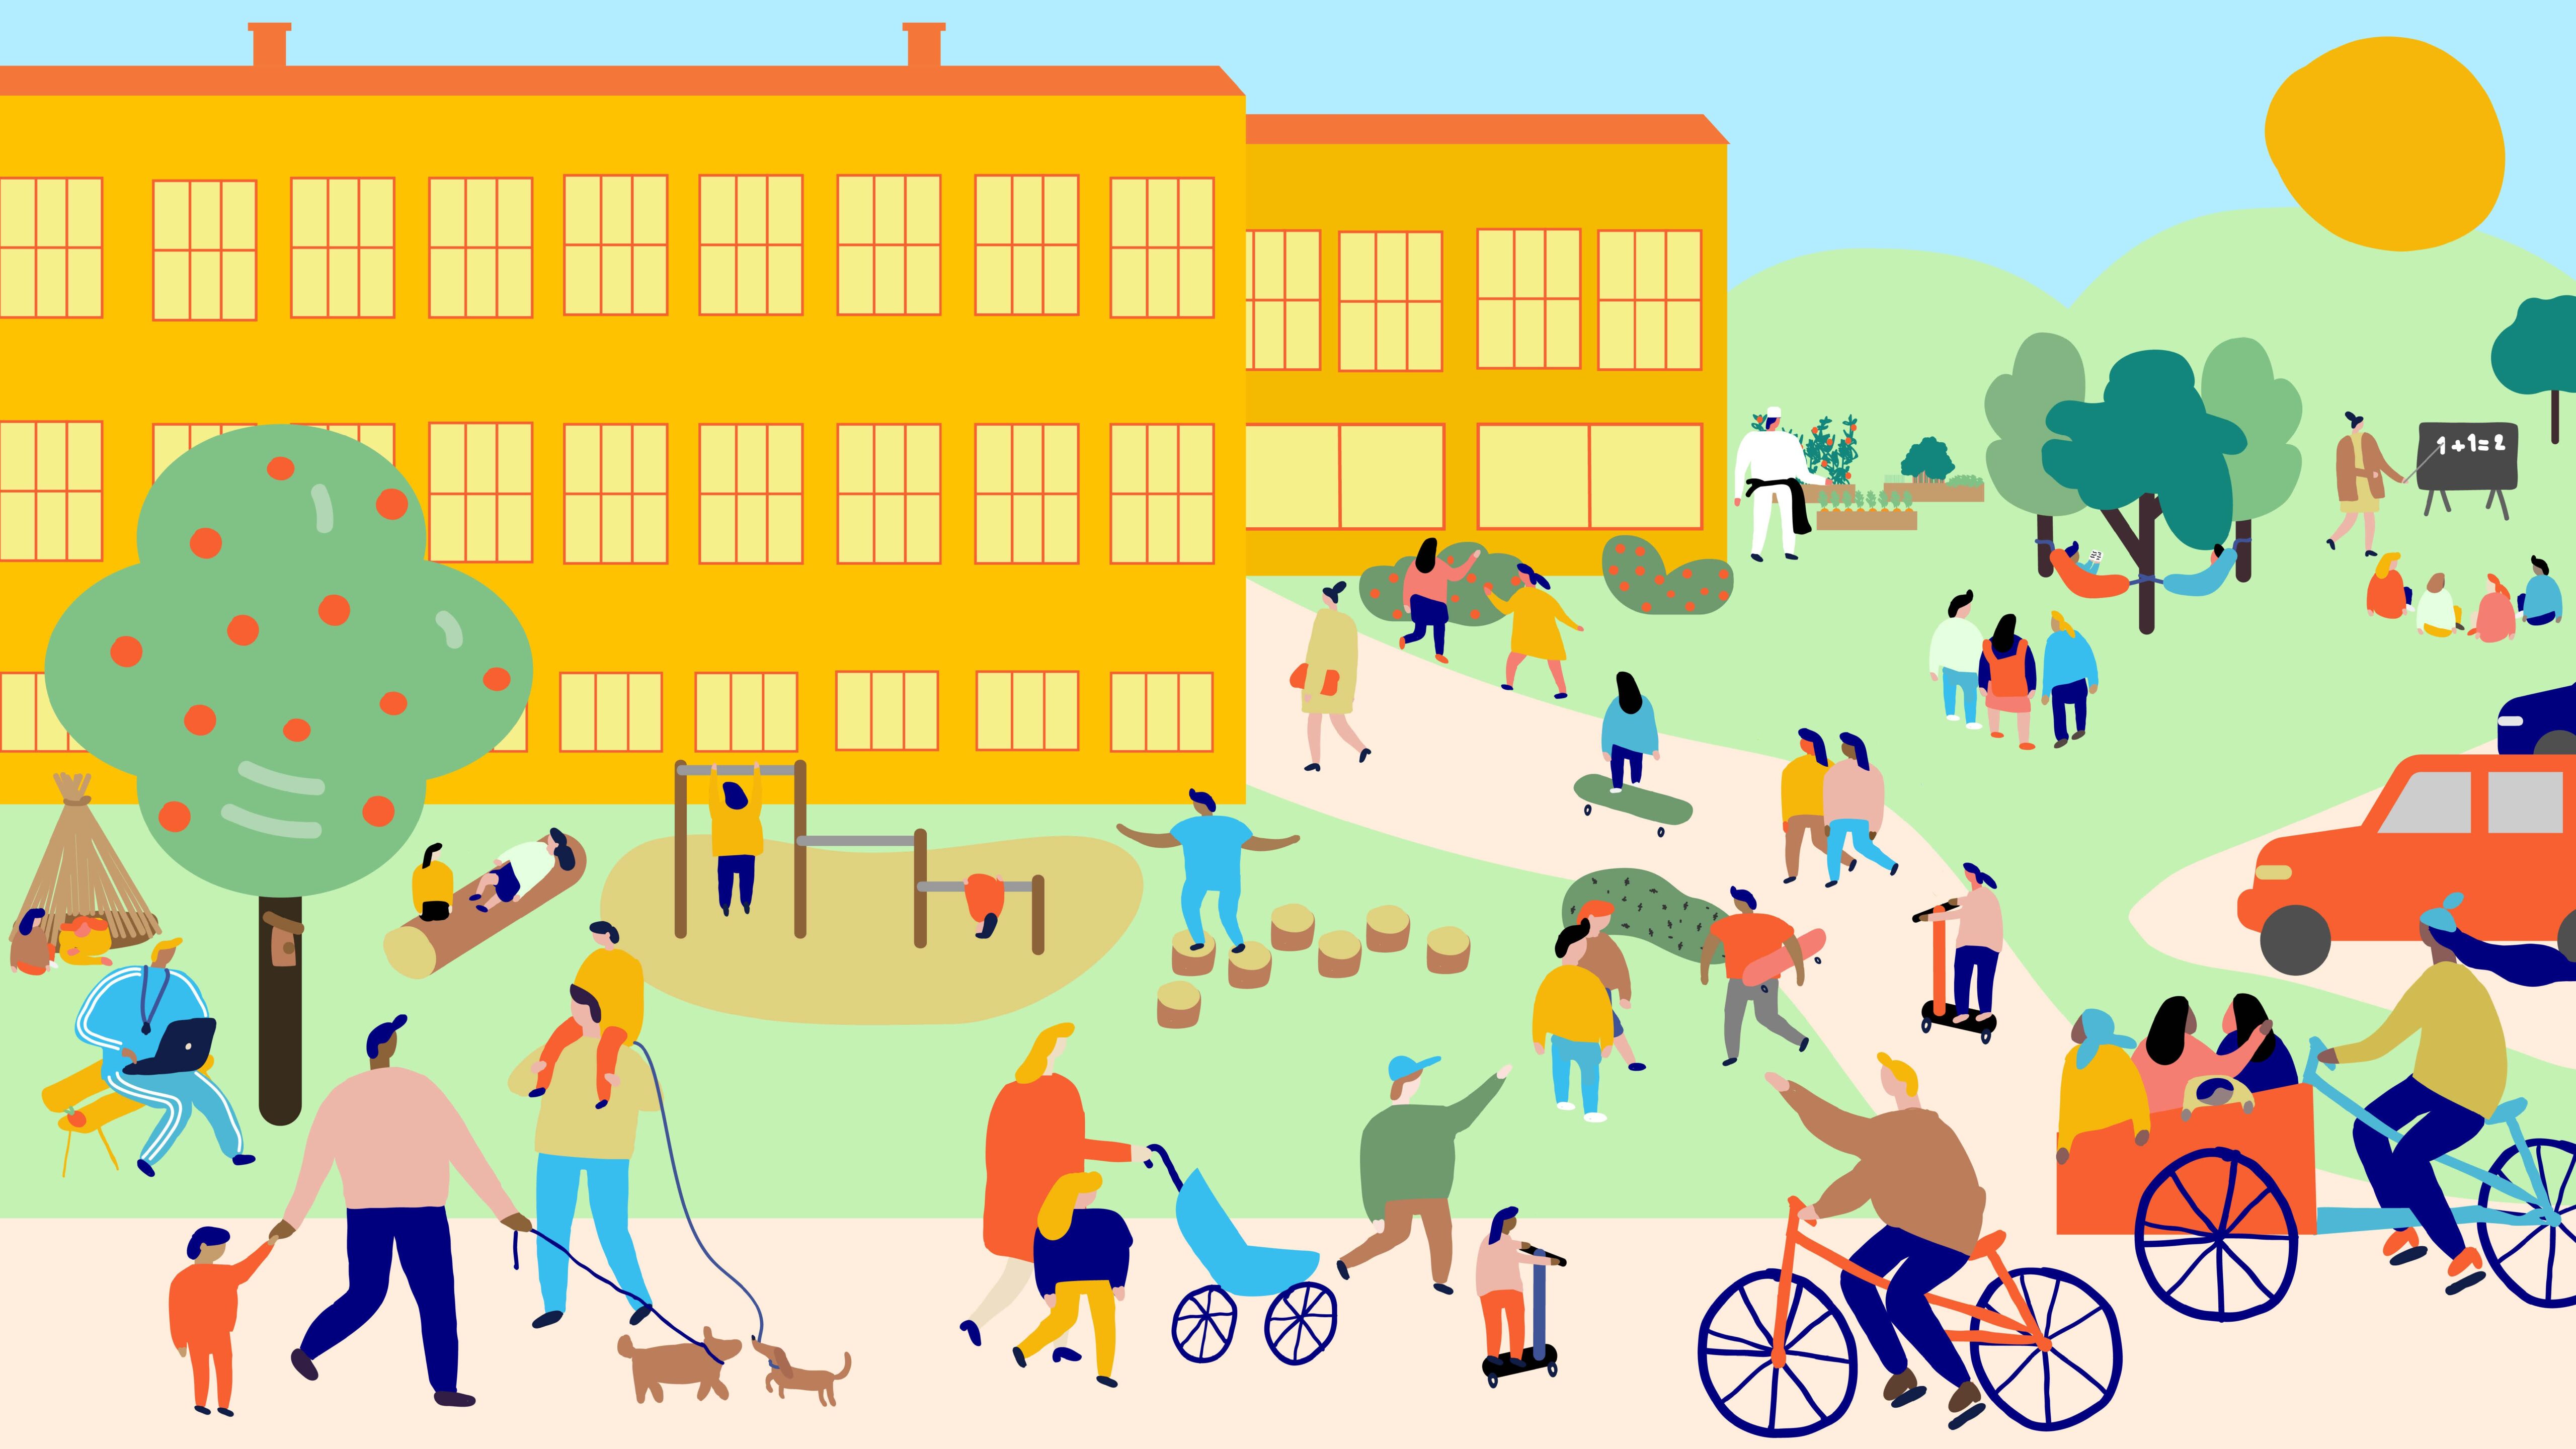 Skolgård med mycket människor som cyklar leker odlar, hälsar på varandra.